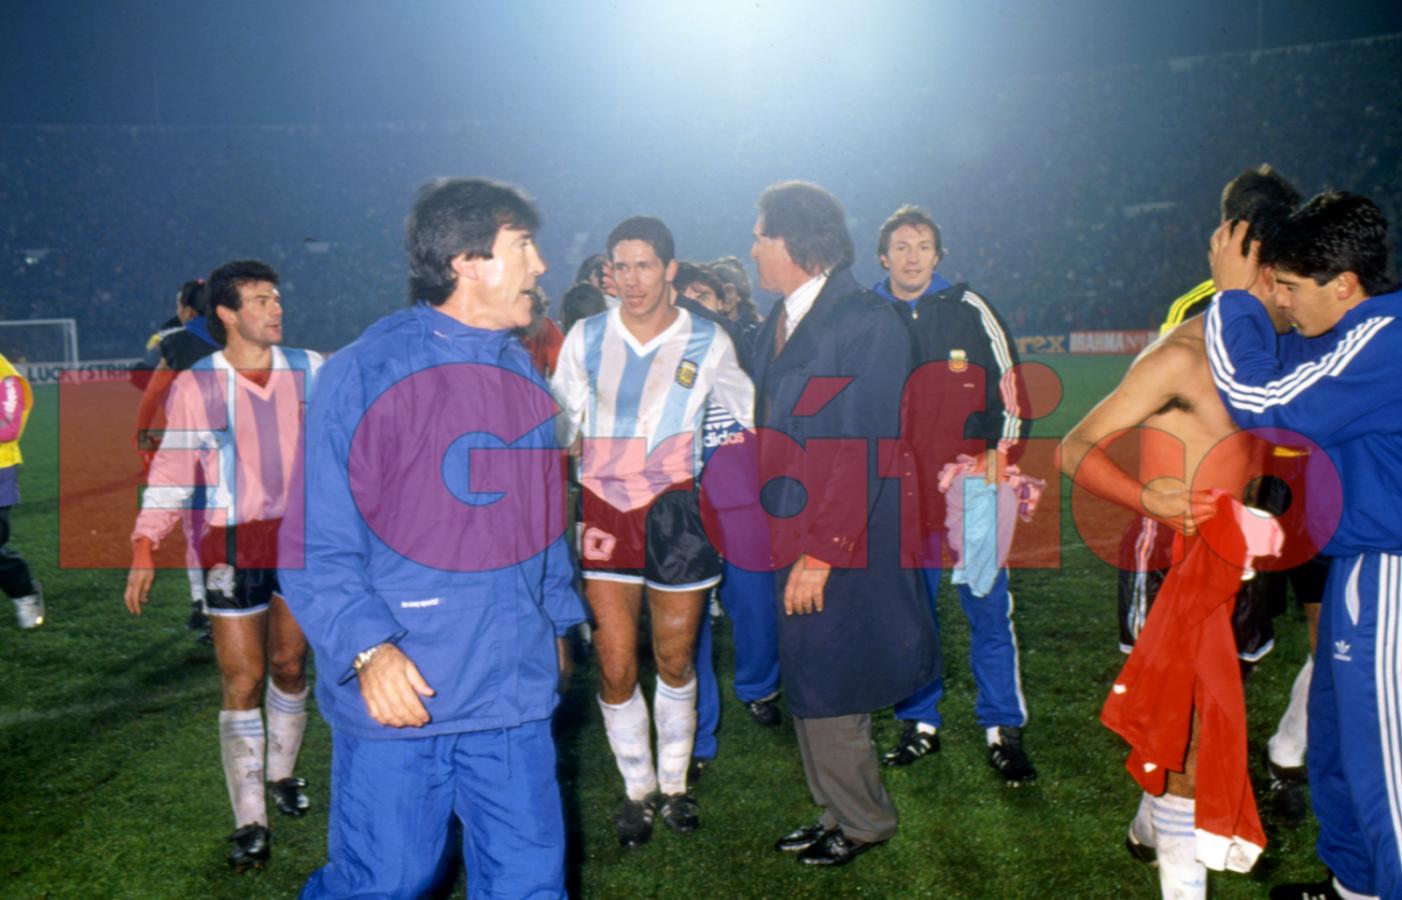 Imagen Basile y Simeone en la copa América de Chile 1991. Jugador símbolo de el 